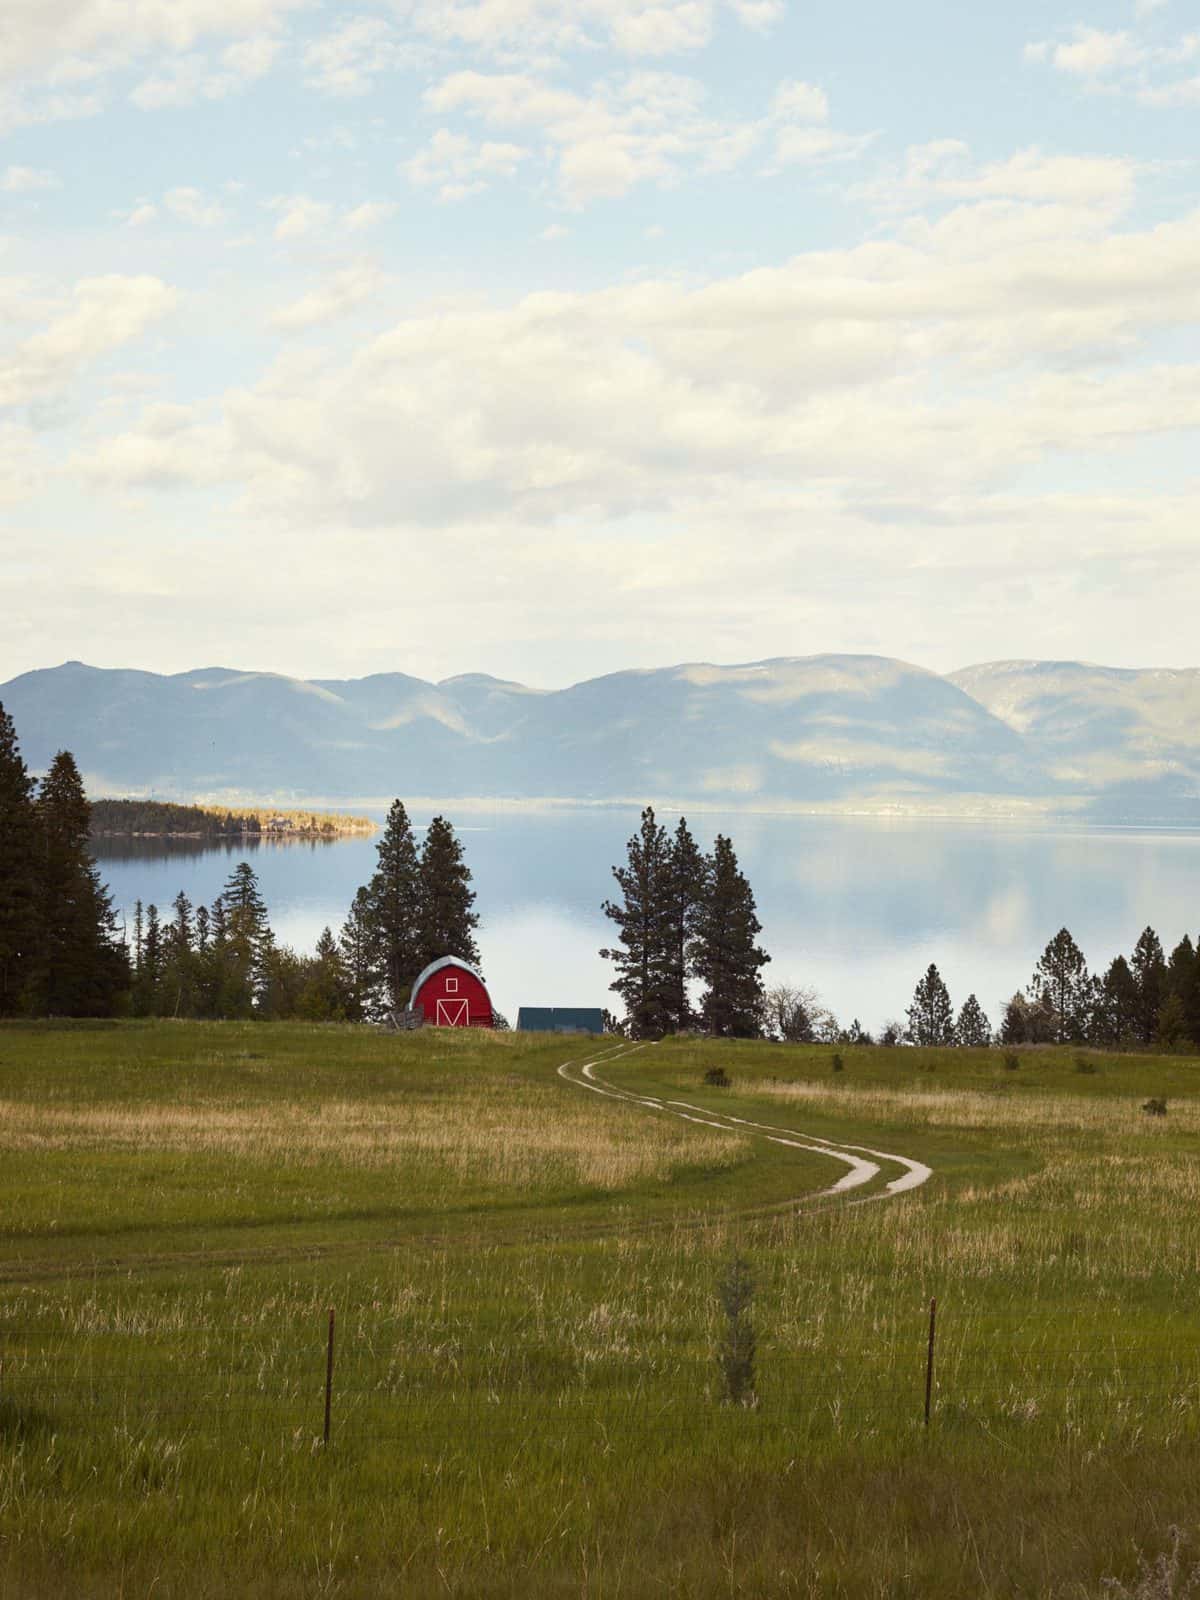 Flathead Lake in Montana